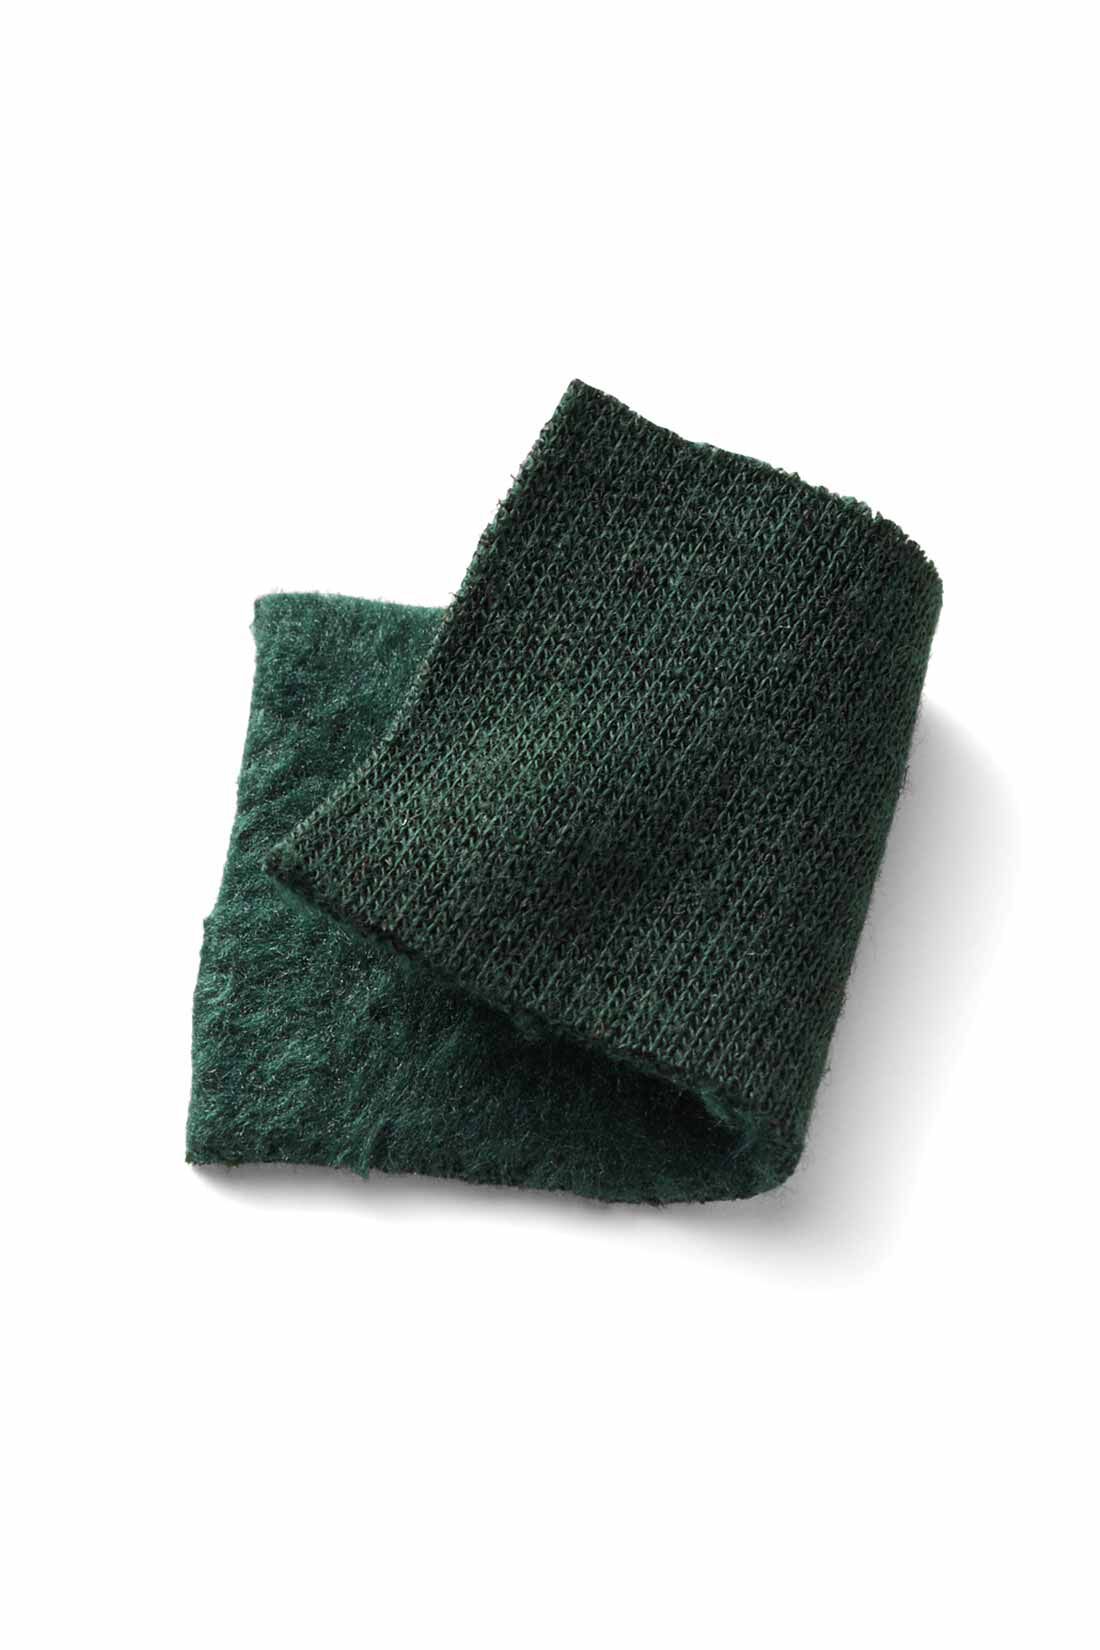 Real Stock|リブ イン コンフォート まるで着る毛布！ 激ぬく裏シャギーのらくちんストレートパンツ〈グリーン〉|カットソーの裏側を起毛加工でふんわり毛足を立たせた裏シャギー素材。毛布のように暖かいけど、表は滑らかで秋〜春先まで気持ちのいい素材です。